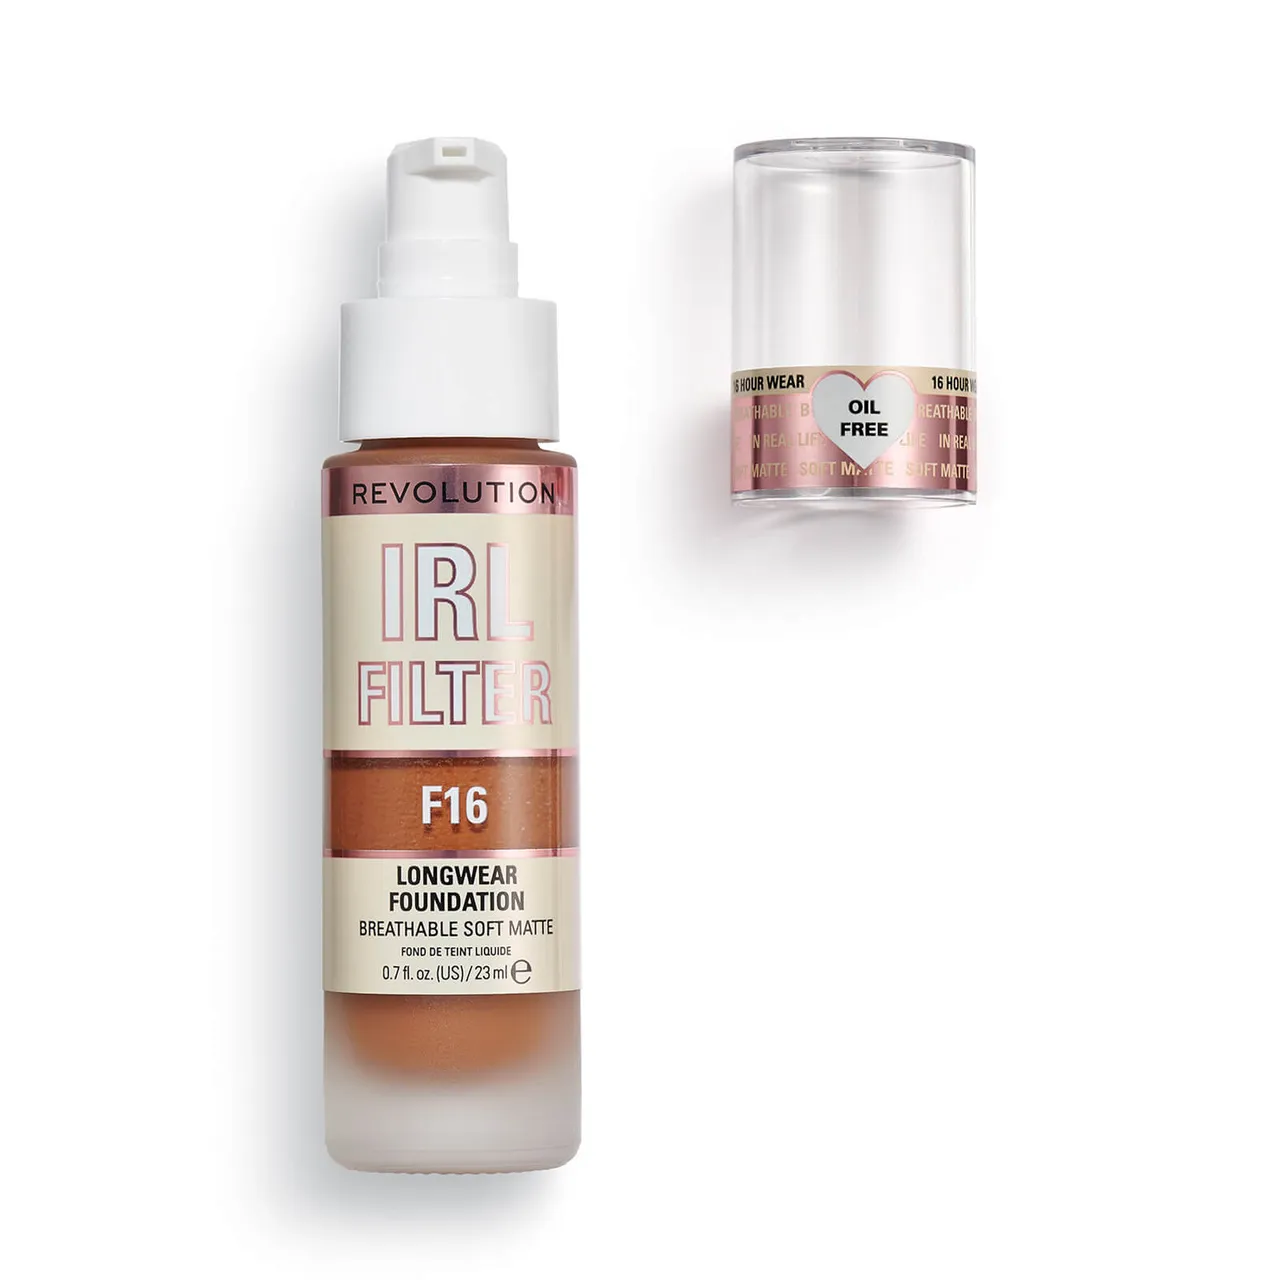 Makeup Revolution IRL Filter Longwear Foundation 23ml (Various Shades) - F16